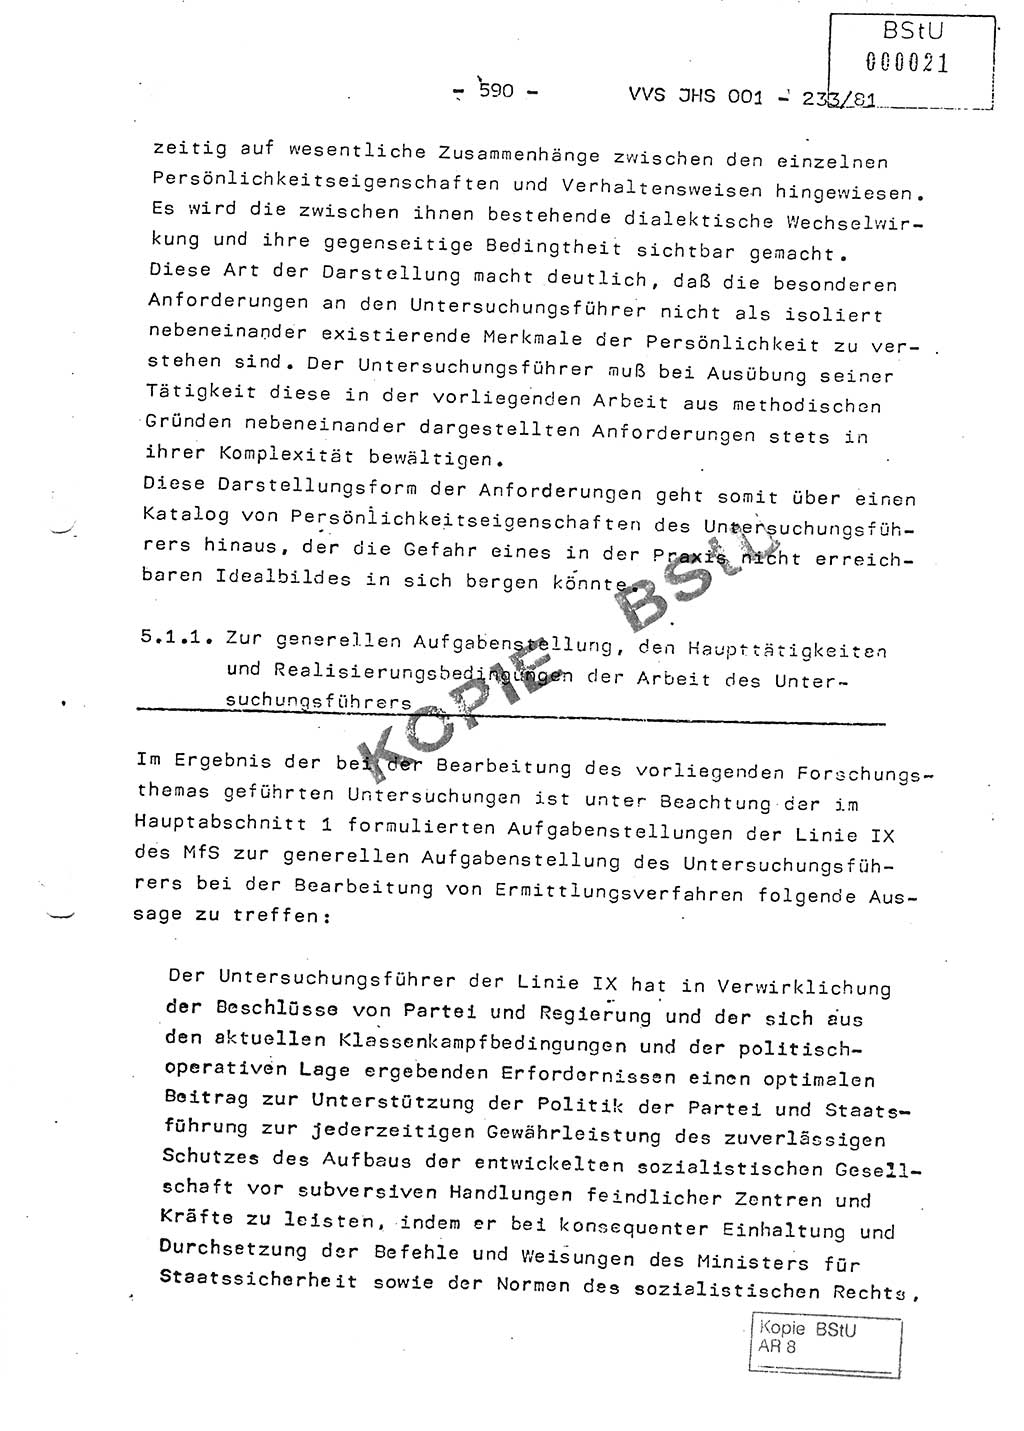 Dissertation Oberstleutnant Horst Zank (JHS), Oberstleutnant Dr. Karl-Heinz Knoblauch (JHS), Oberstleutnant Gustav-Adolf Kowalewski (HA Ⅸ), Oberstleutnant Wolfgang Plötner (HA Ⅸ), Ministerium für Staatssicherheit (MfS) [Deutsche Demokratische Republik (DDR)], Juristische Hochschule (JHS), Vertrauliche Verschlußsache (VVS) o001-233/81, Potsdam 1981, Blatt 590 (Diss. MfS DDR JHS VVS o001-233/81 1981, Bl. 590)